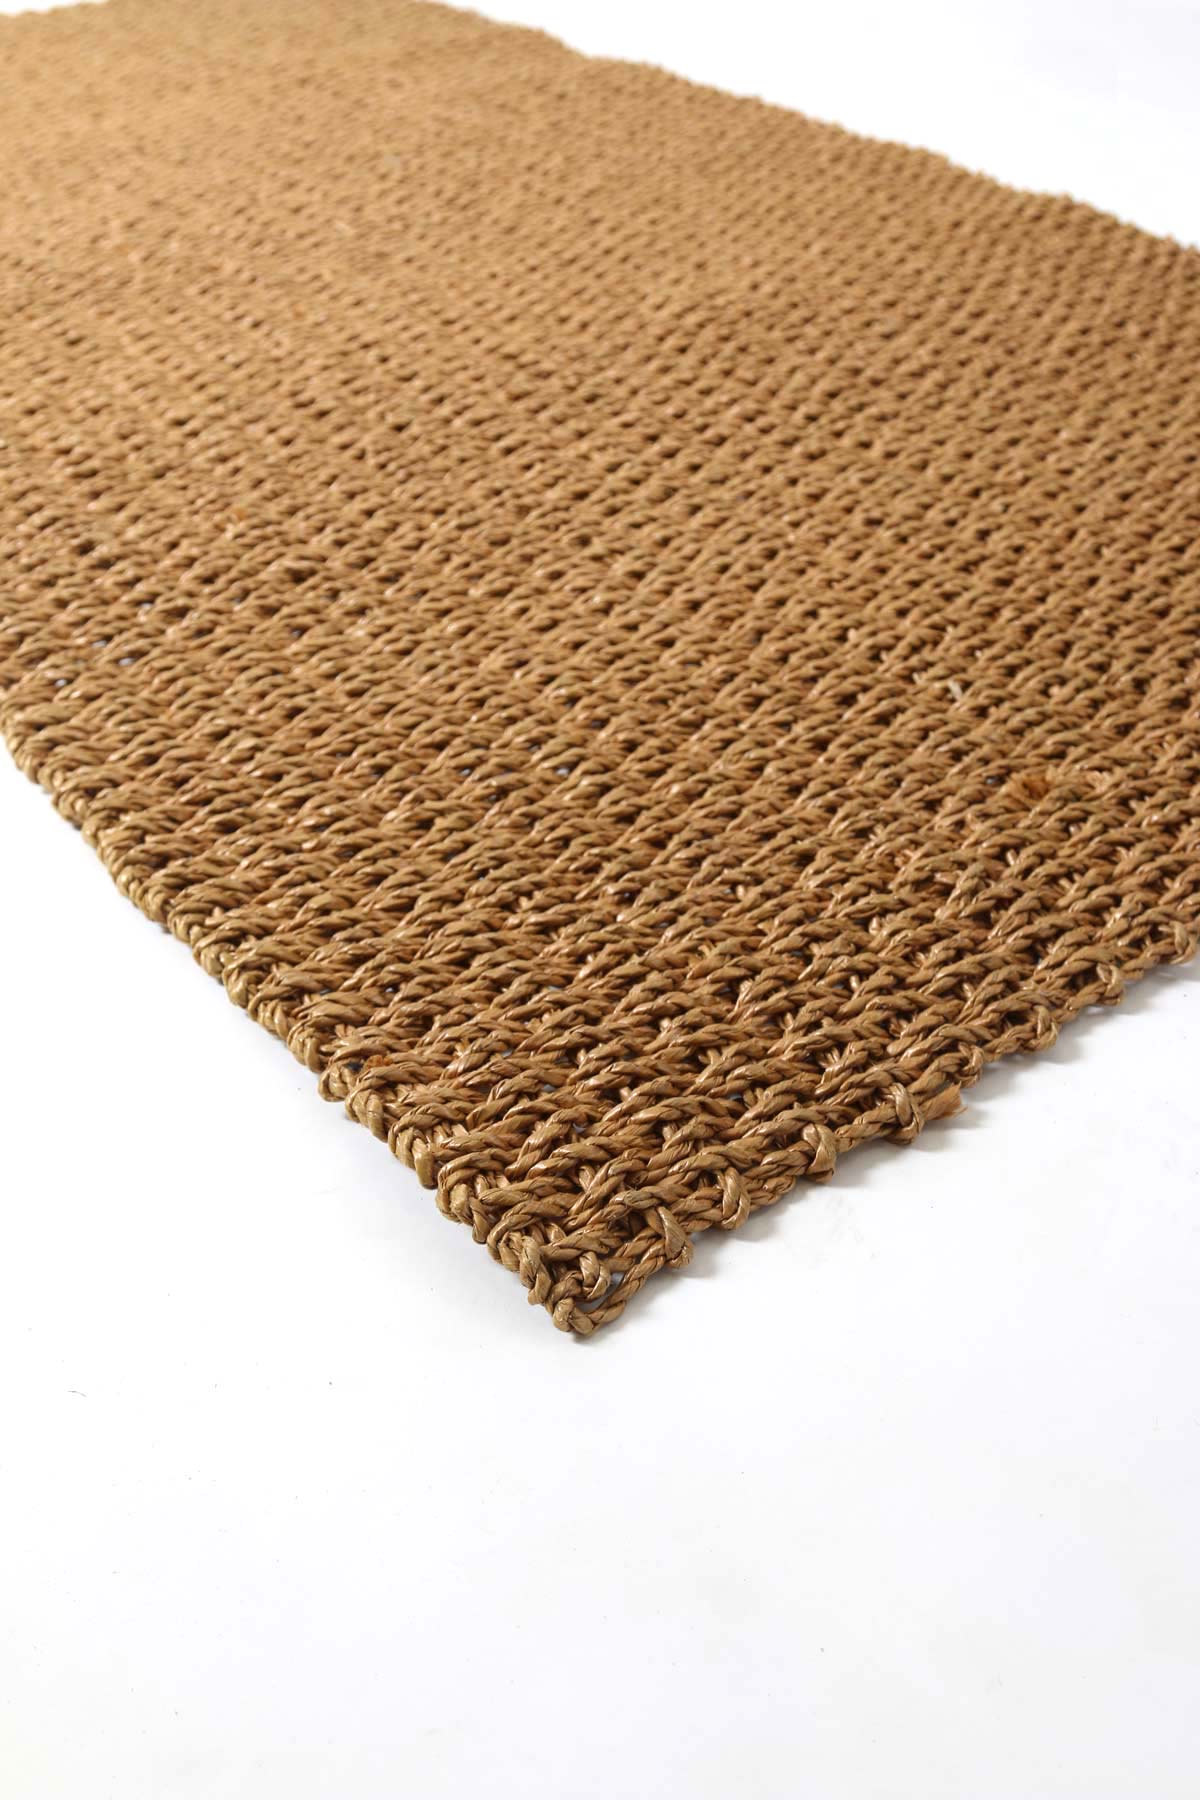 Hand Woven Recycled Plastic Floor Mat - Golden Brown